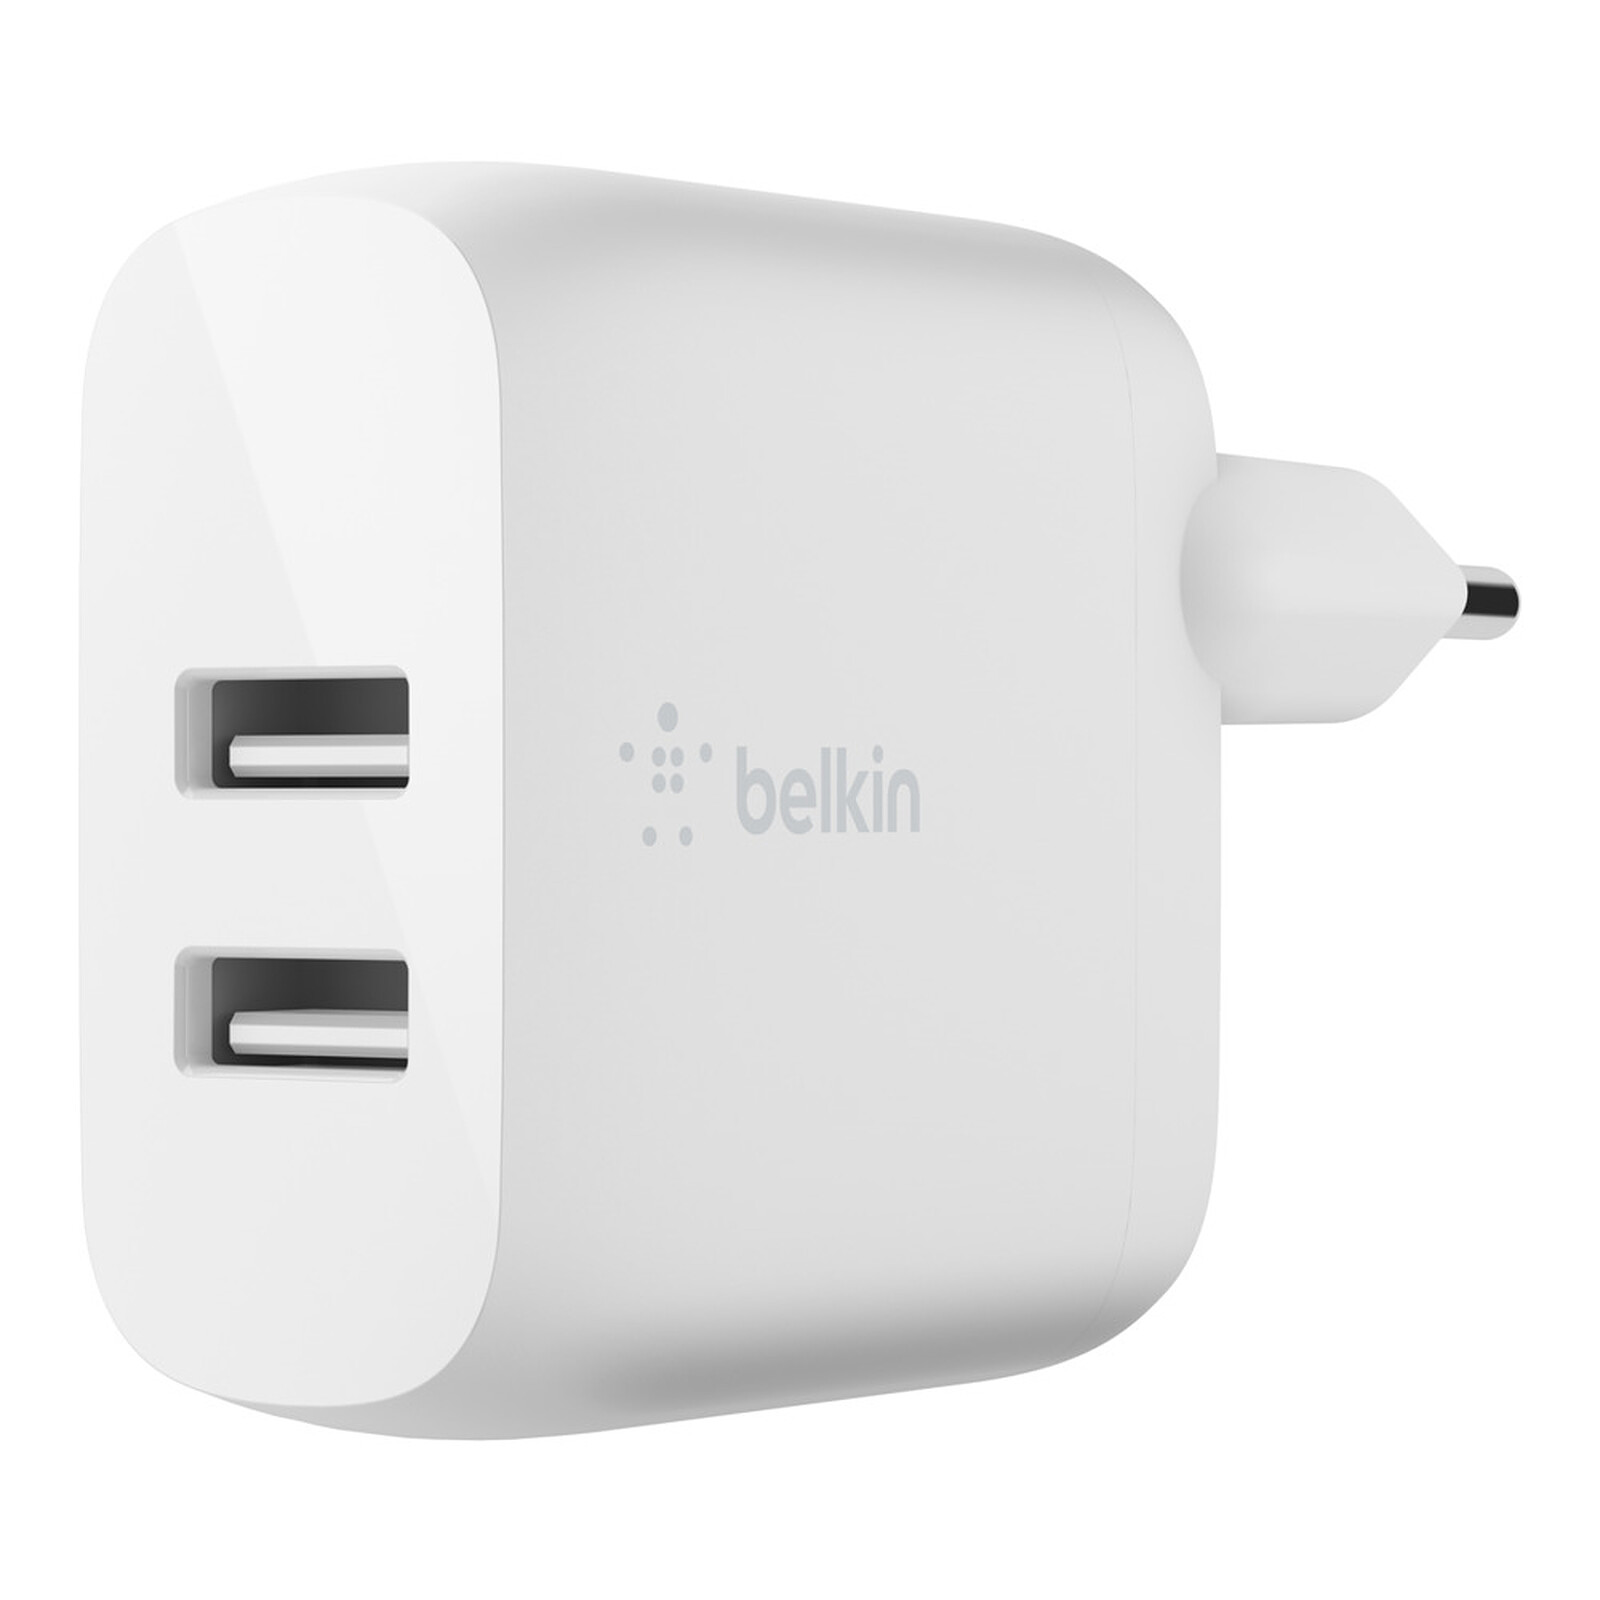 Belkin Chargeur secteur Blanc (F7U009VF06) - Chargeur téléphone - Garantie  3 ans LDLC